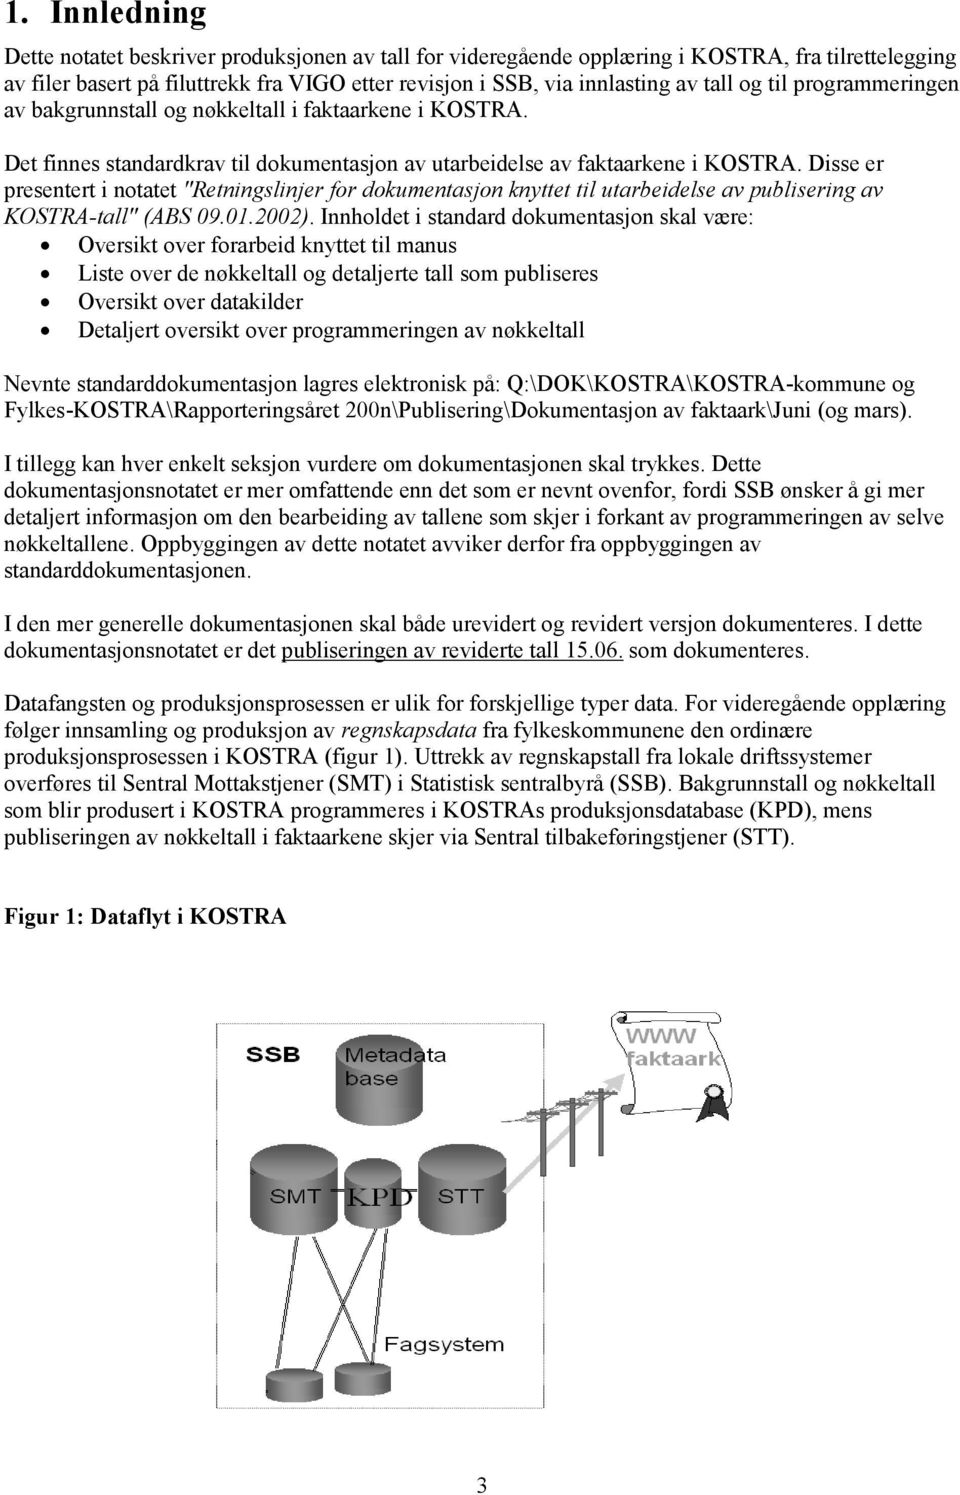 Disse er presentert i notatet "Retningslinjer for dokumentasjon knyttet til utarbeidelse av publisering av KOSTRA-tall" (ABS 09.01.2002).